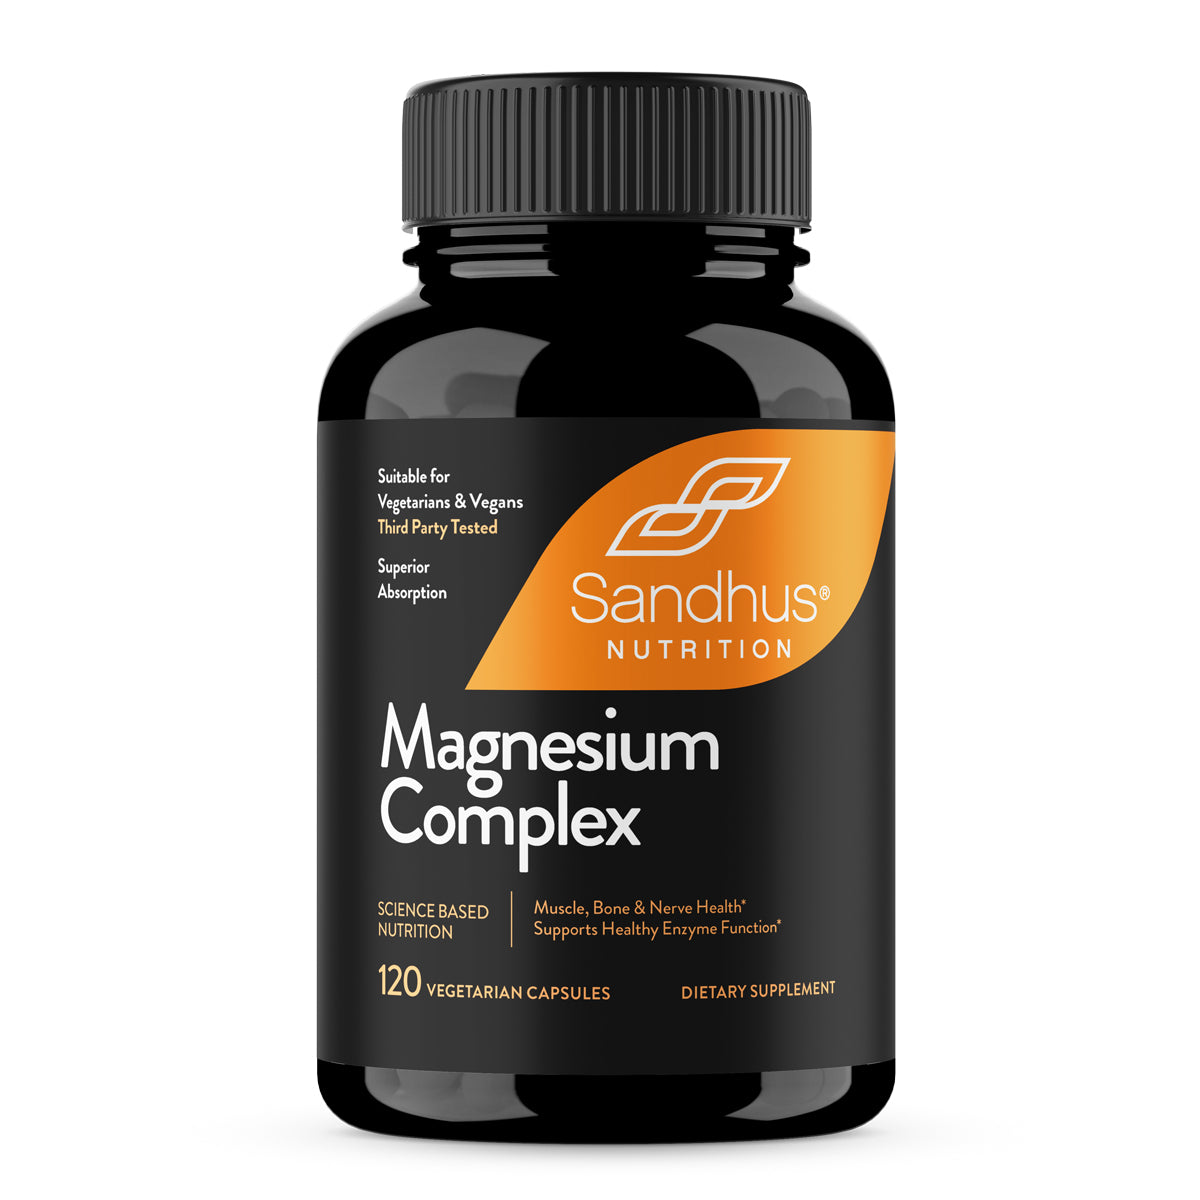 magnesium-complex-supplement